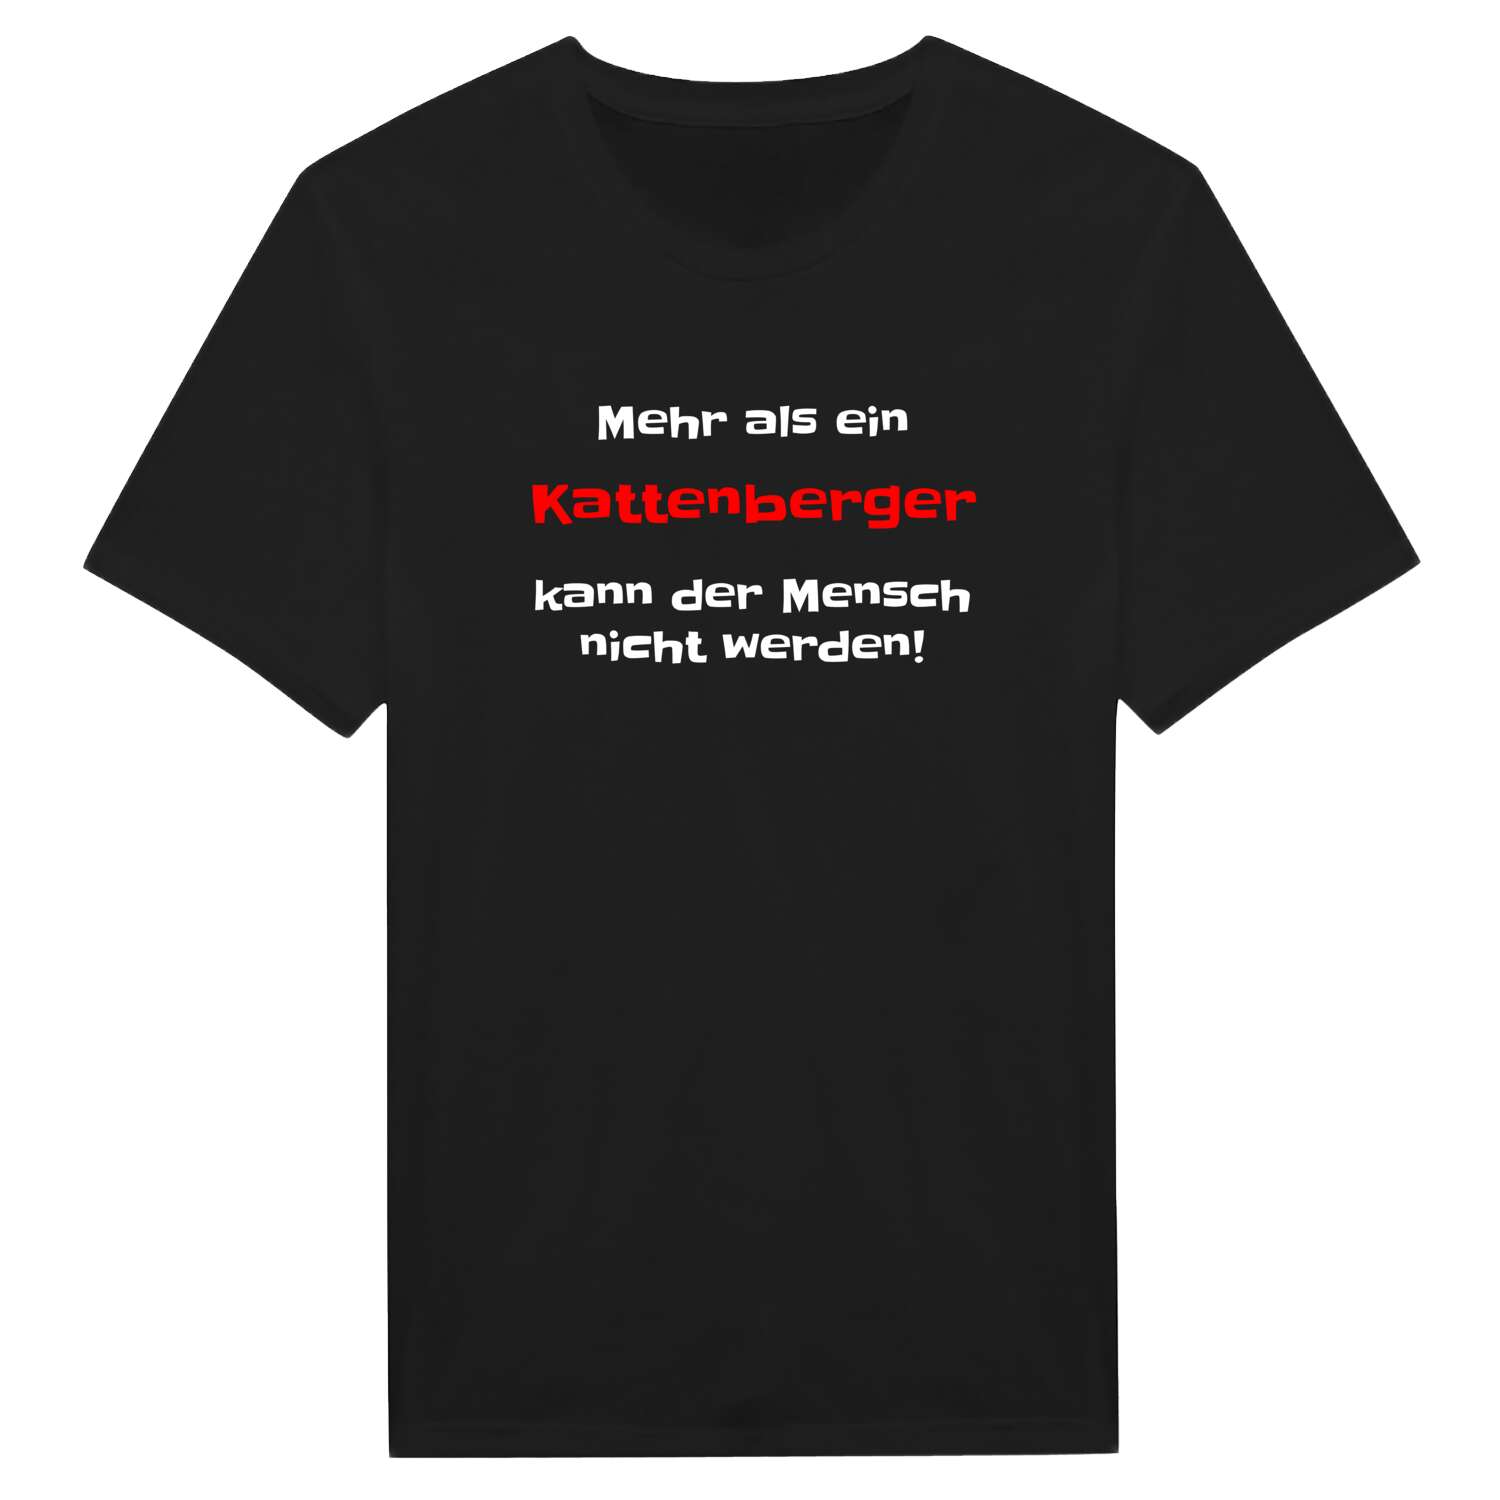 Kattenberg T-Shirt »Mehr als ein«